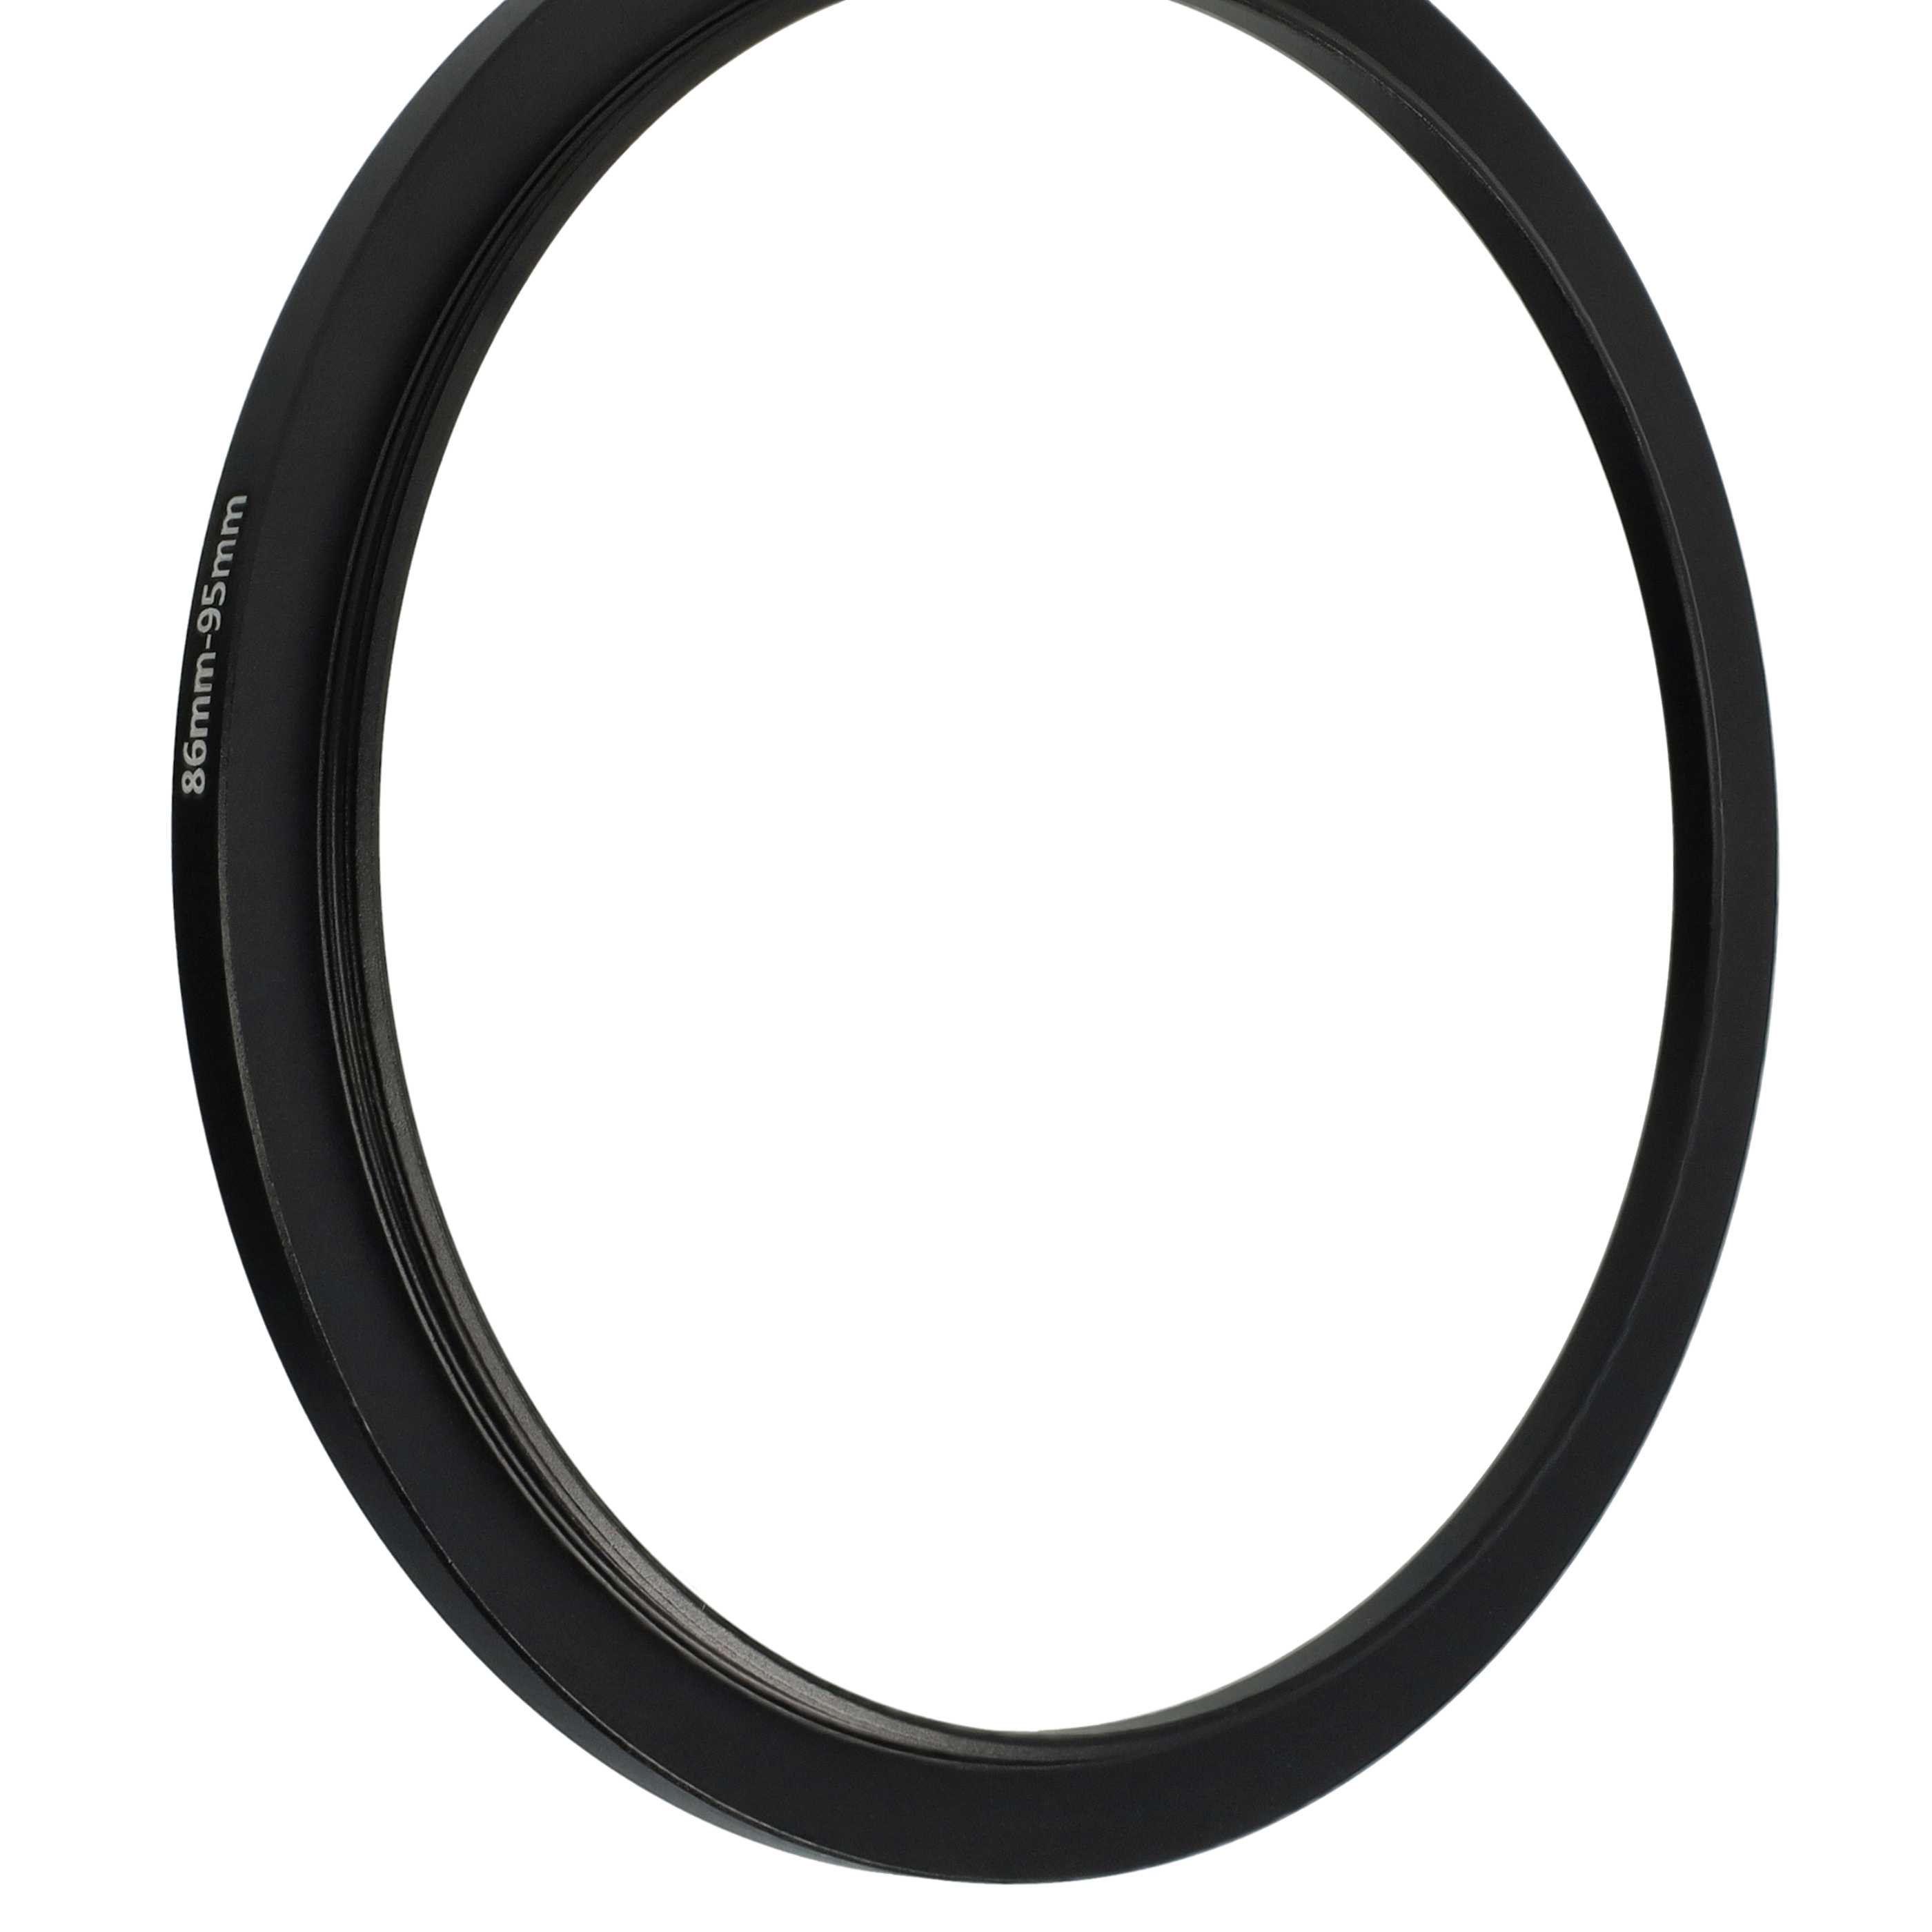 Step-Up-Ring Adapter 86 mm auf 95 mm passend für diverse Kamera-Objektive - Filteradapter